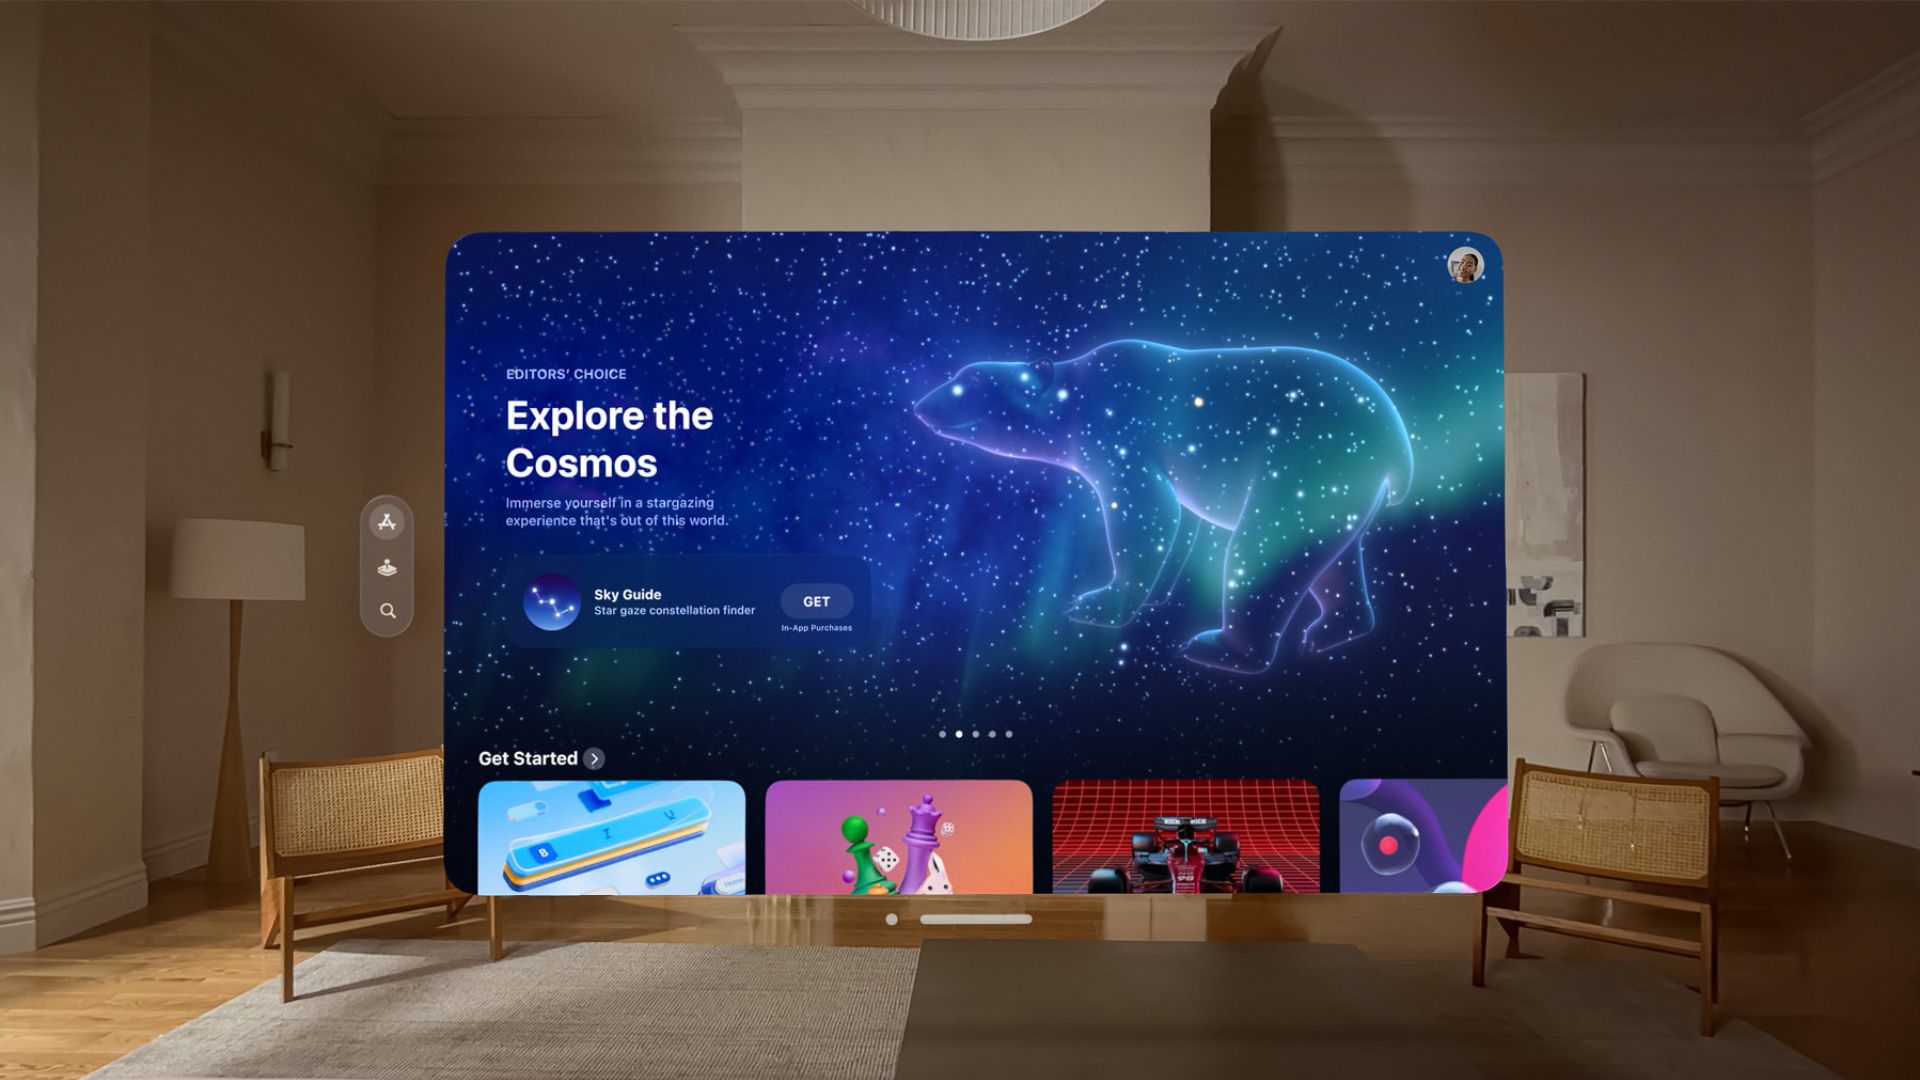 L'application Explore the cosmos d'Apple Vision Pro est affichée dans la maison de quelqu'un, image tirée des supports marketing d'Apple